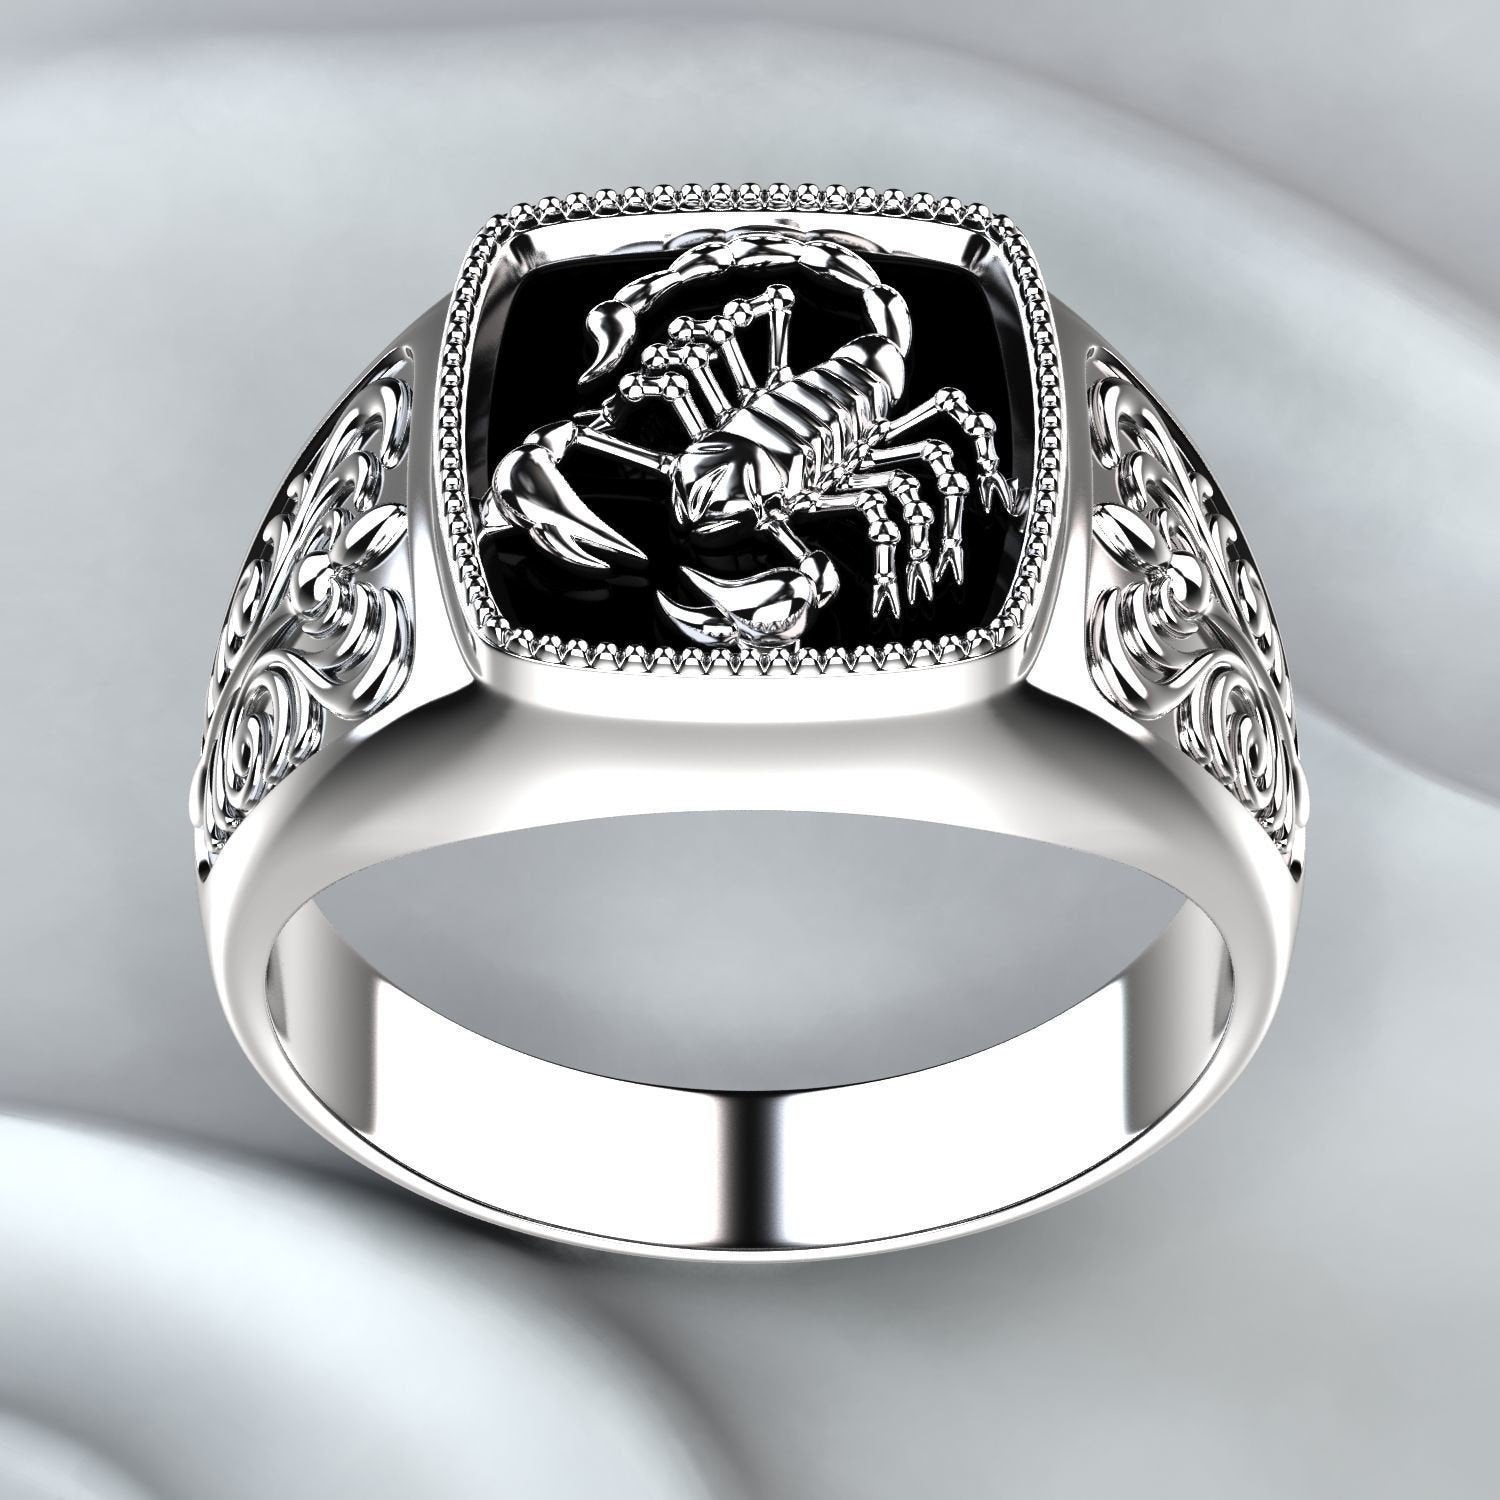 Chuhan Mannen Wedding Ring Schorpioen Ring Klassieke Scorpion Ring Mannen Accessoires Sieraden Ringen Voor Voor Anniversary Party